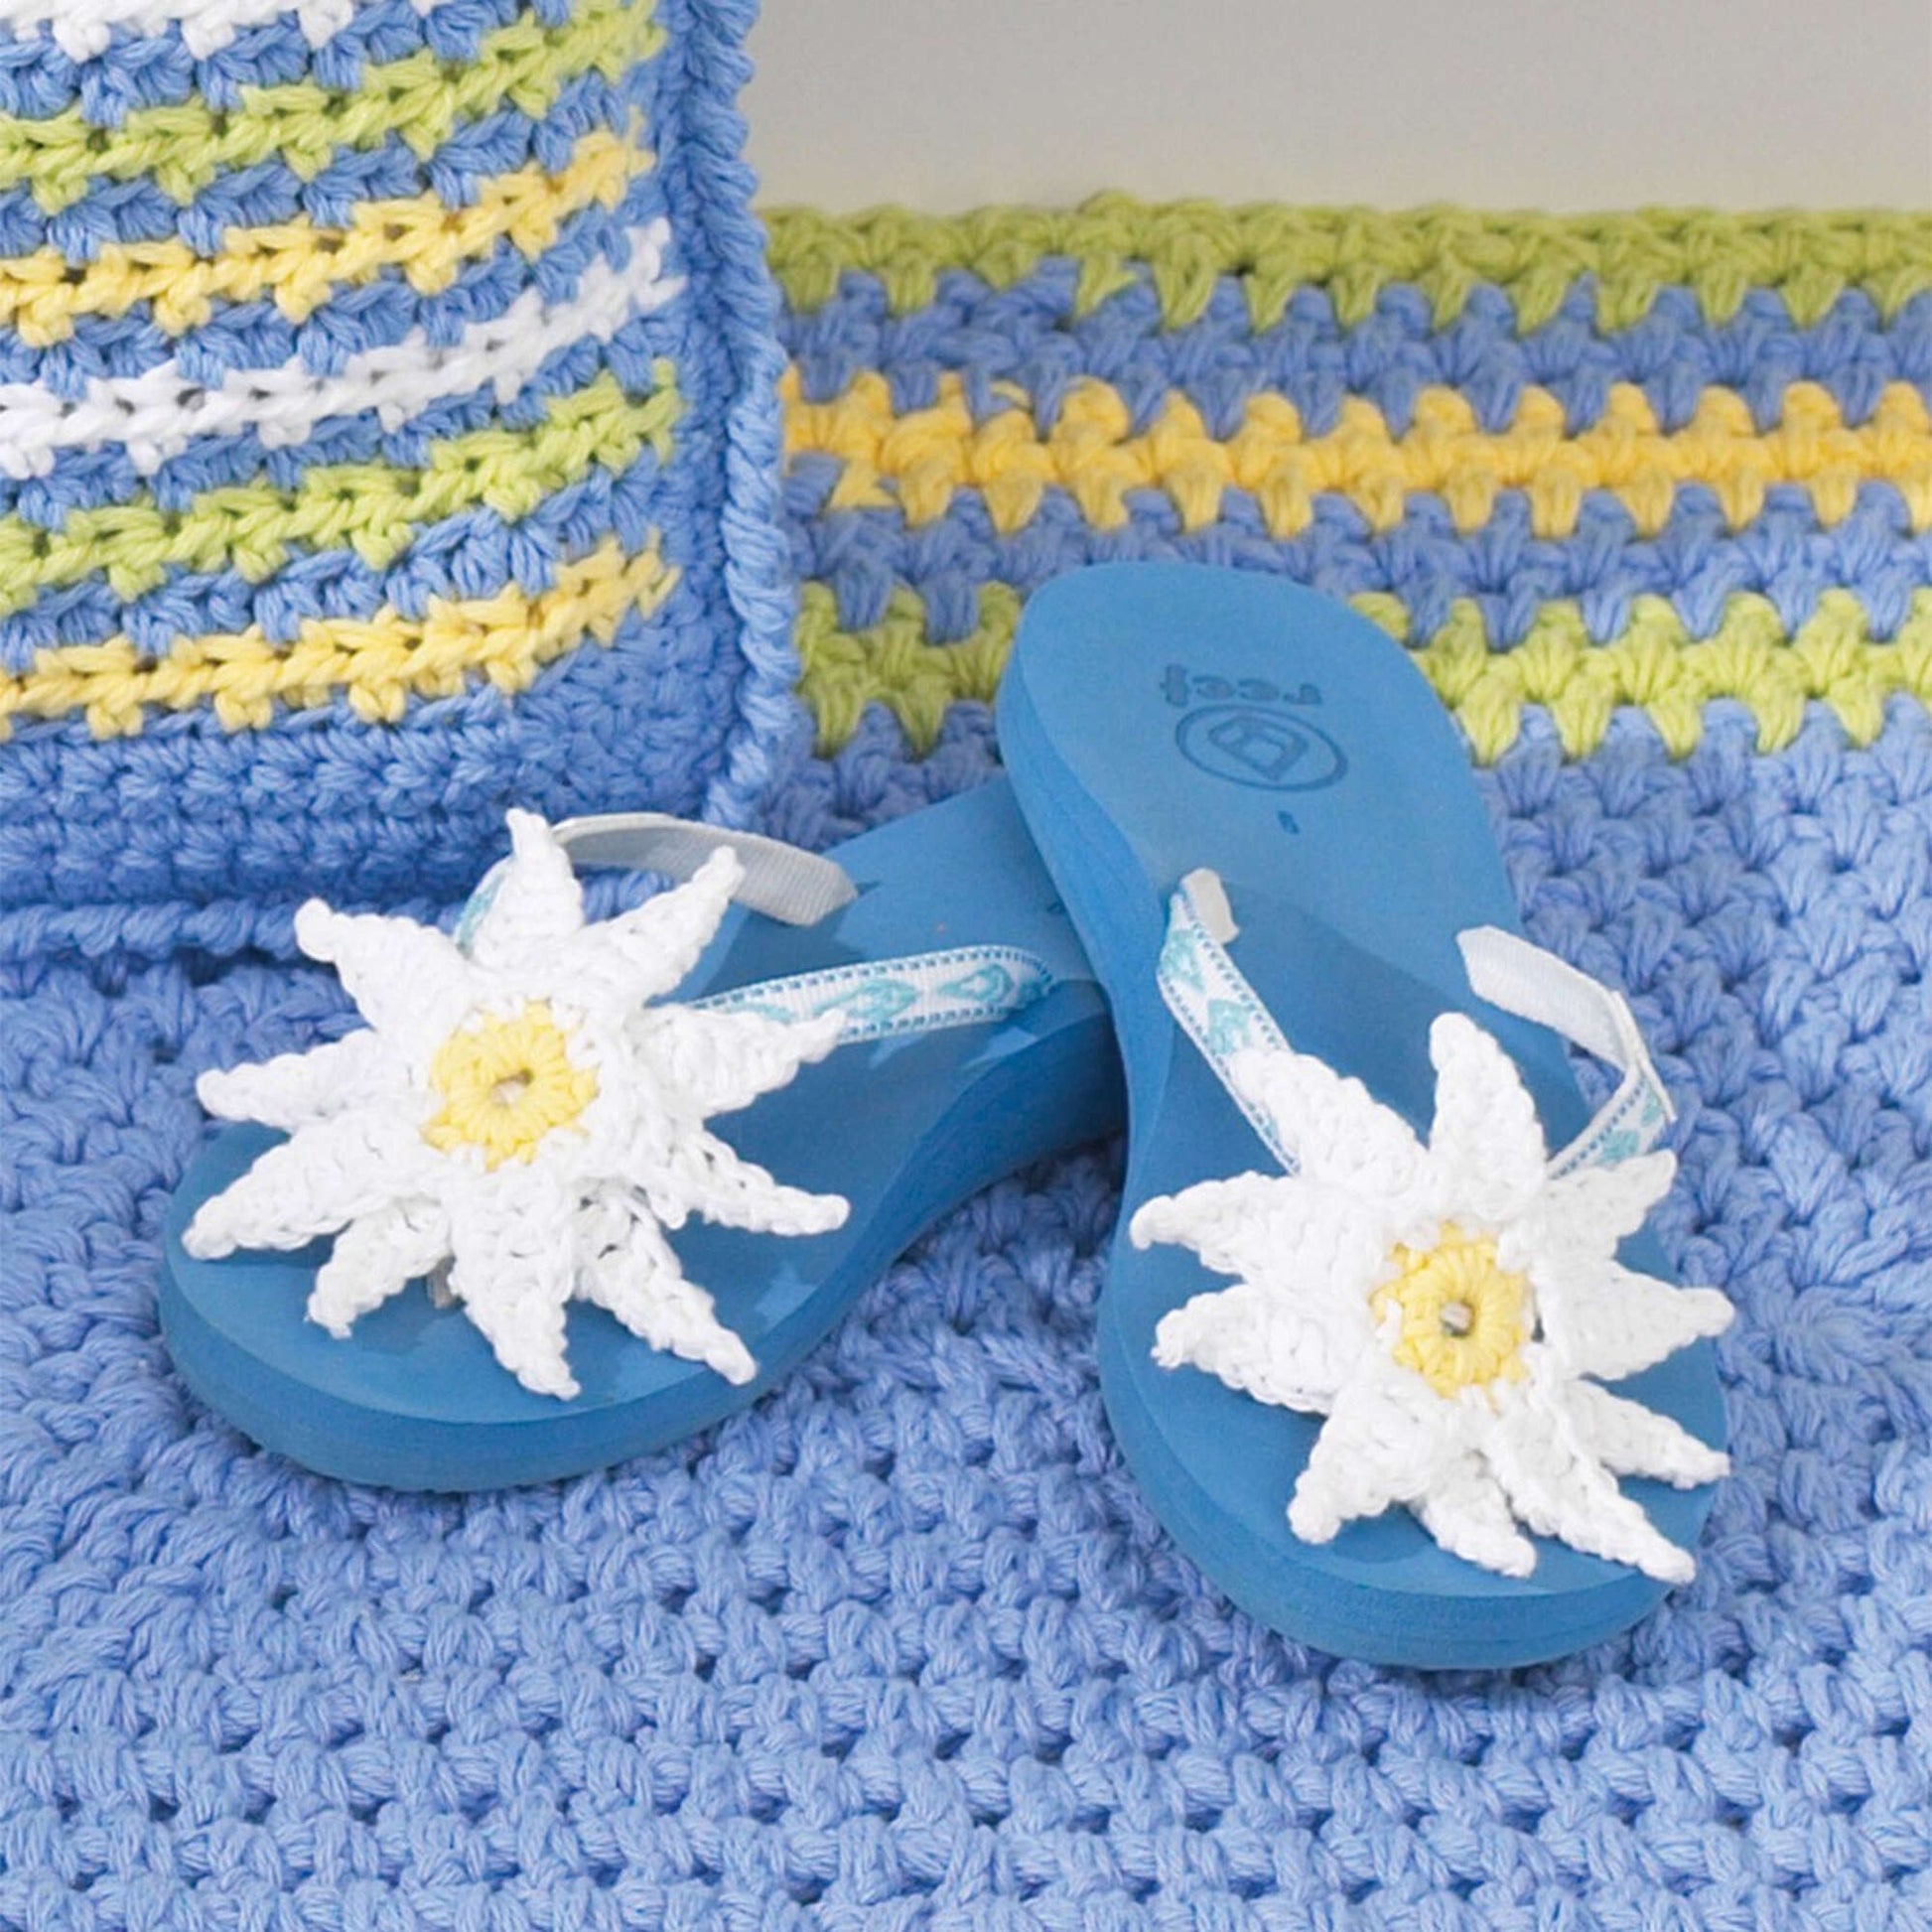 Bernat Flip Flops With Daisies Crochet Accessory made in Bernat Handicrafter Cotton yarn